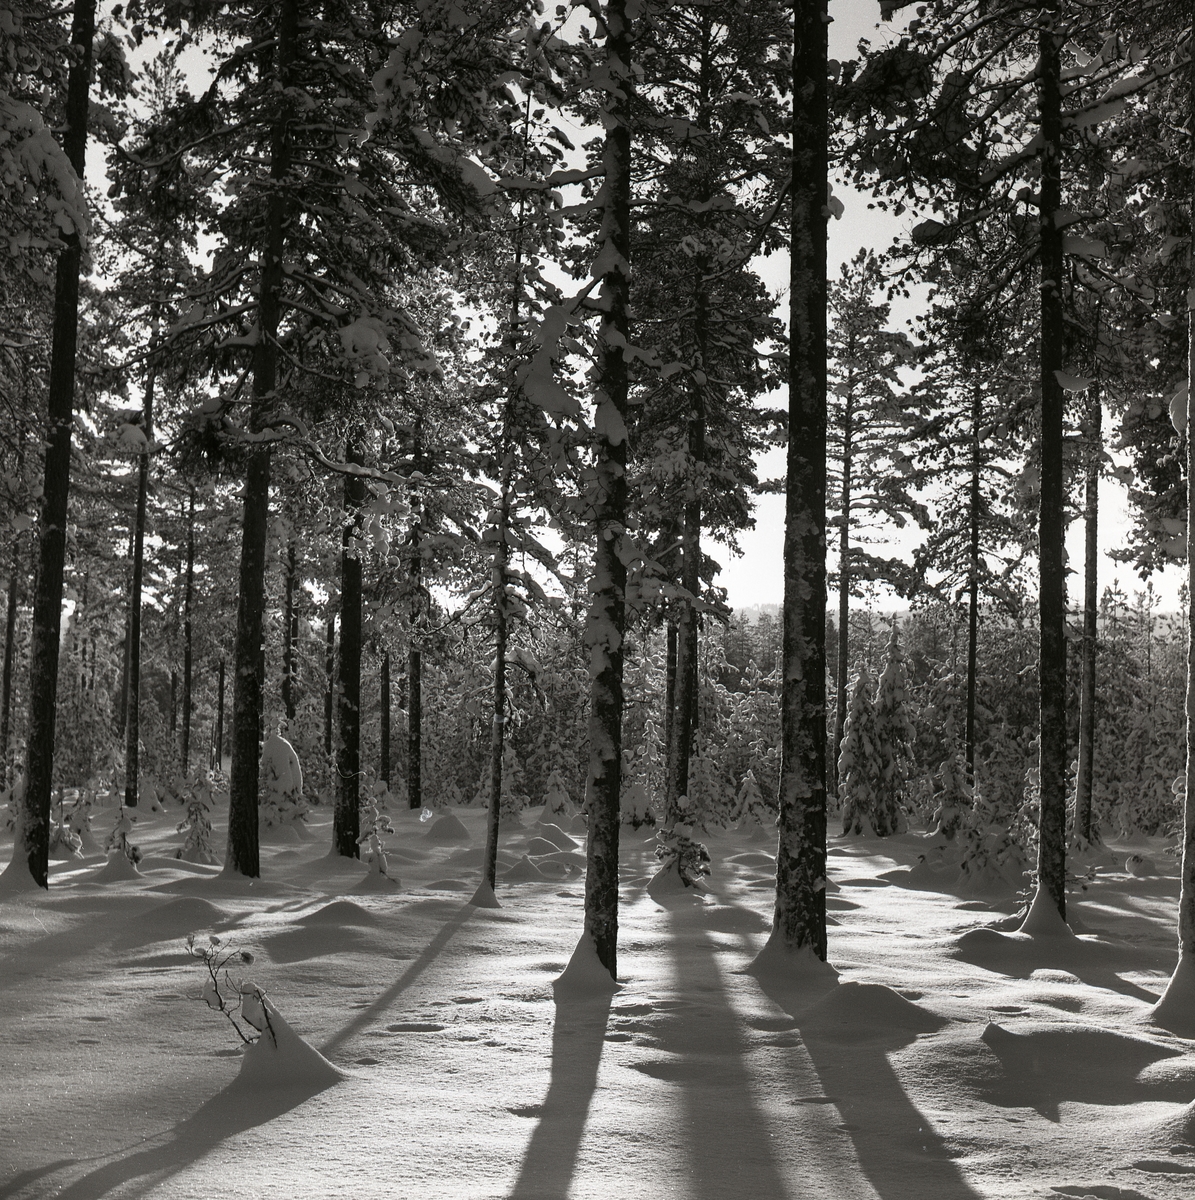 Snötäckt skog med granbuskar, 13-14 december 1959.